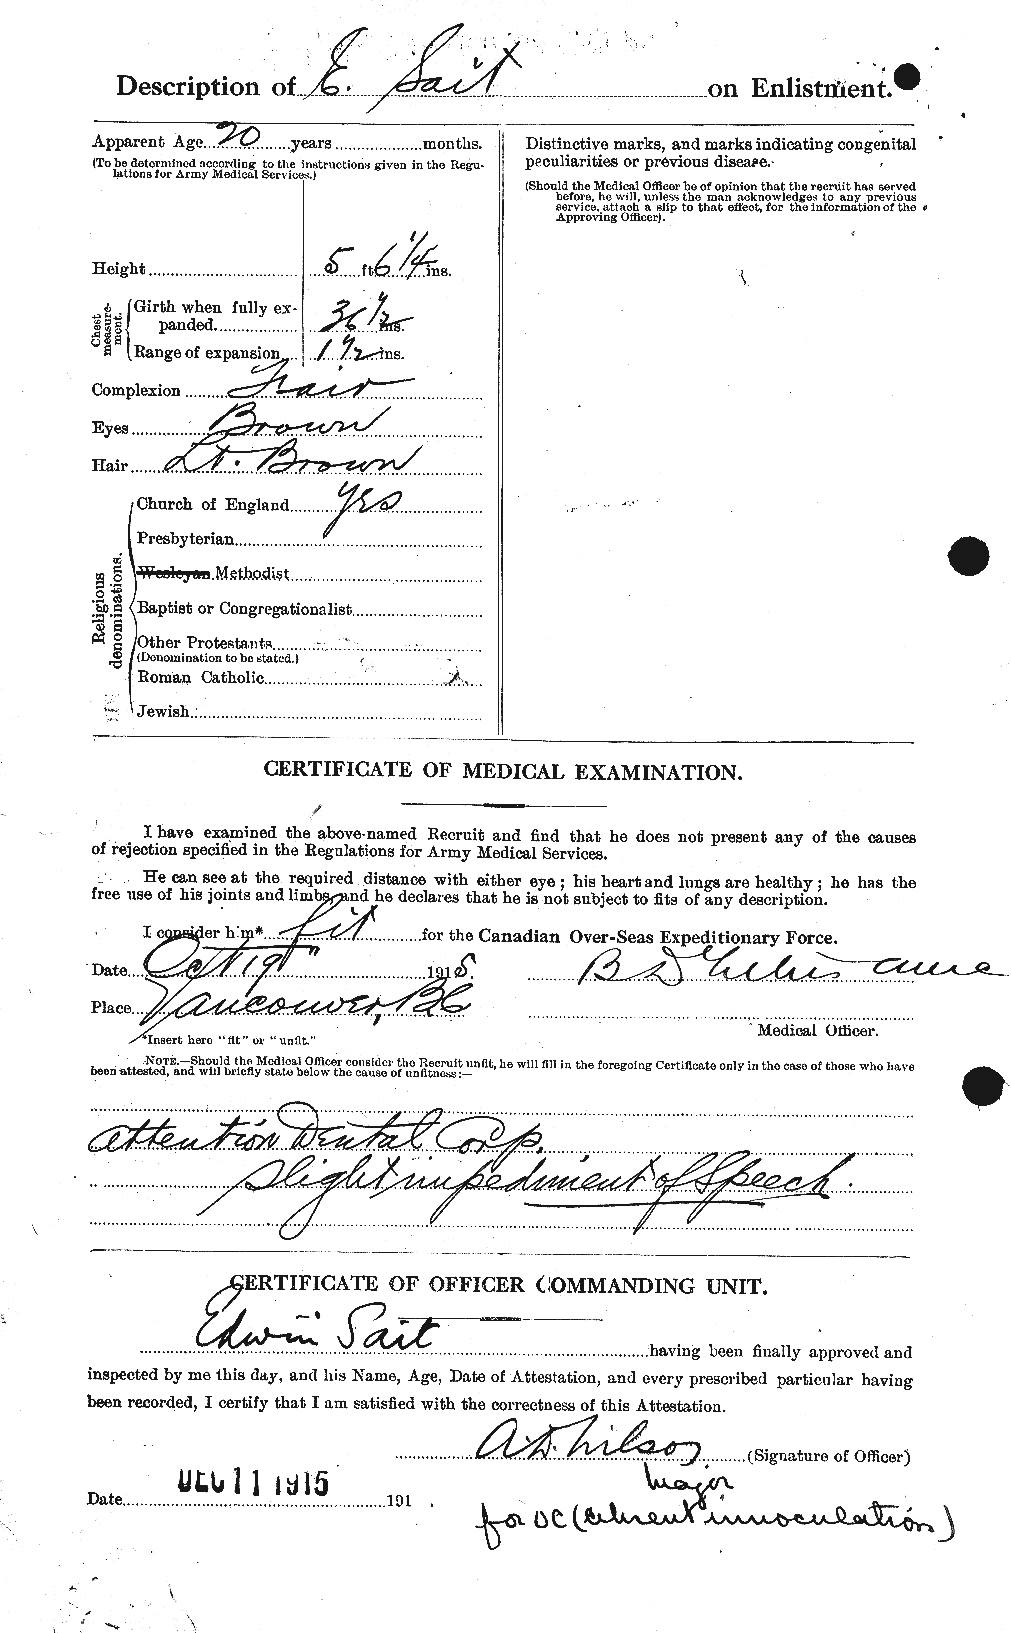 Dossiers du Personnel de la Première Guerre mondiale - CEC 077227b